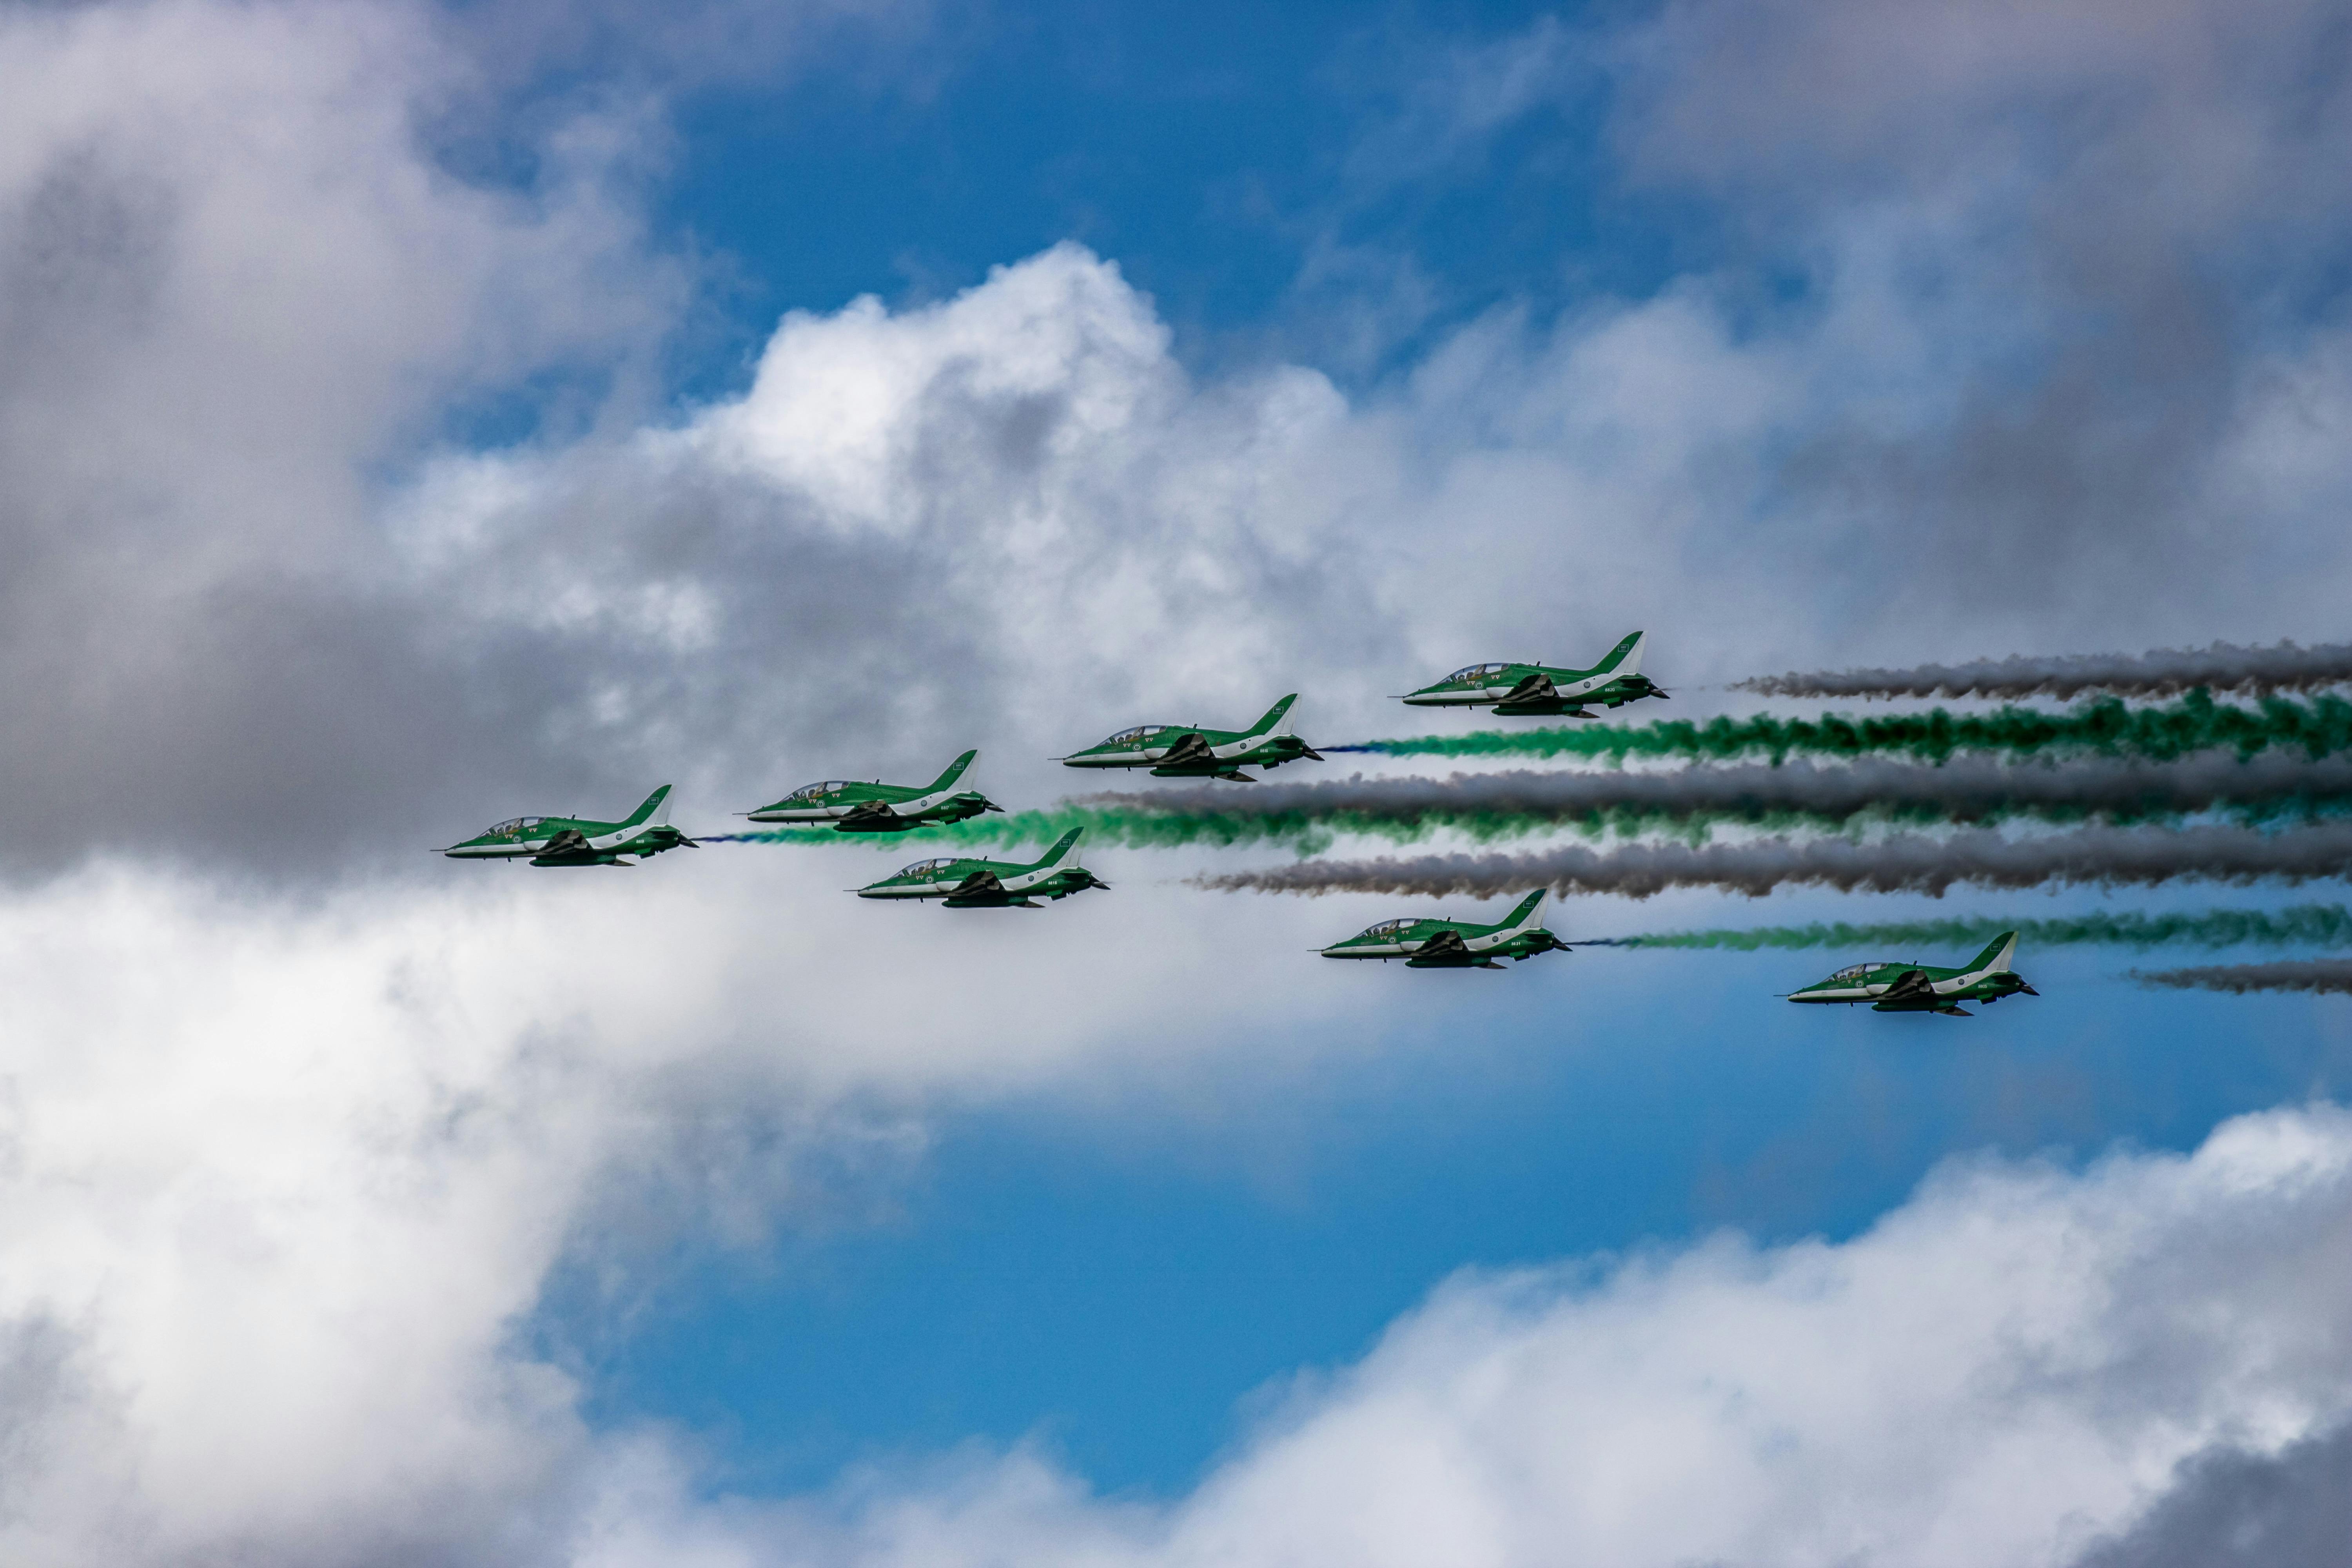 Speedy jets on the sky. Stock Photo by ©vladvitek 66004751